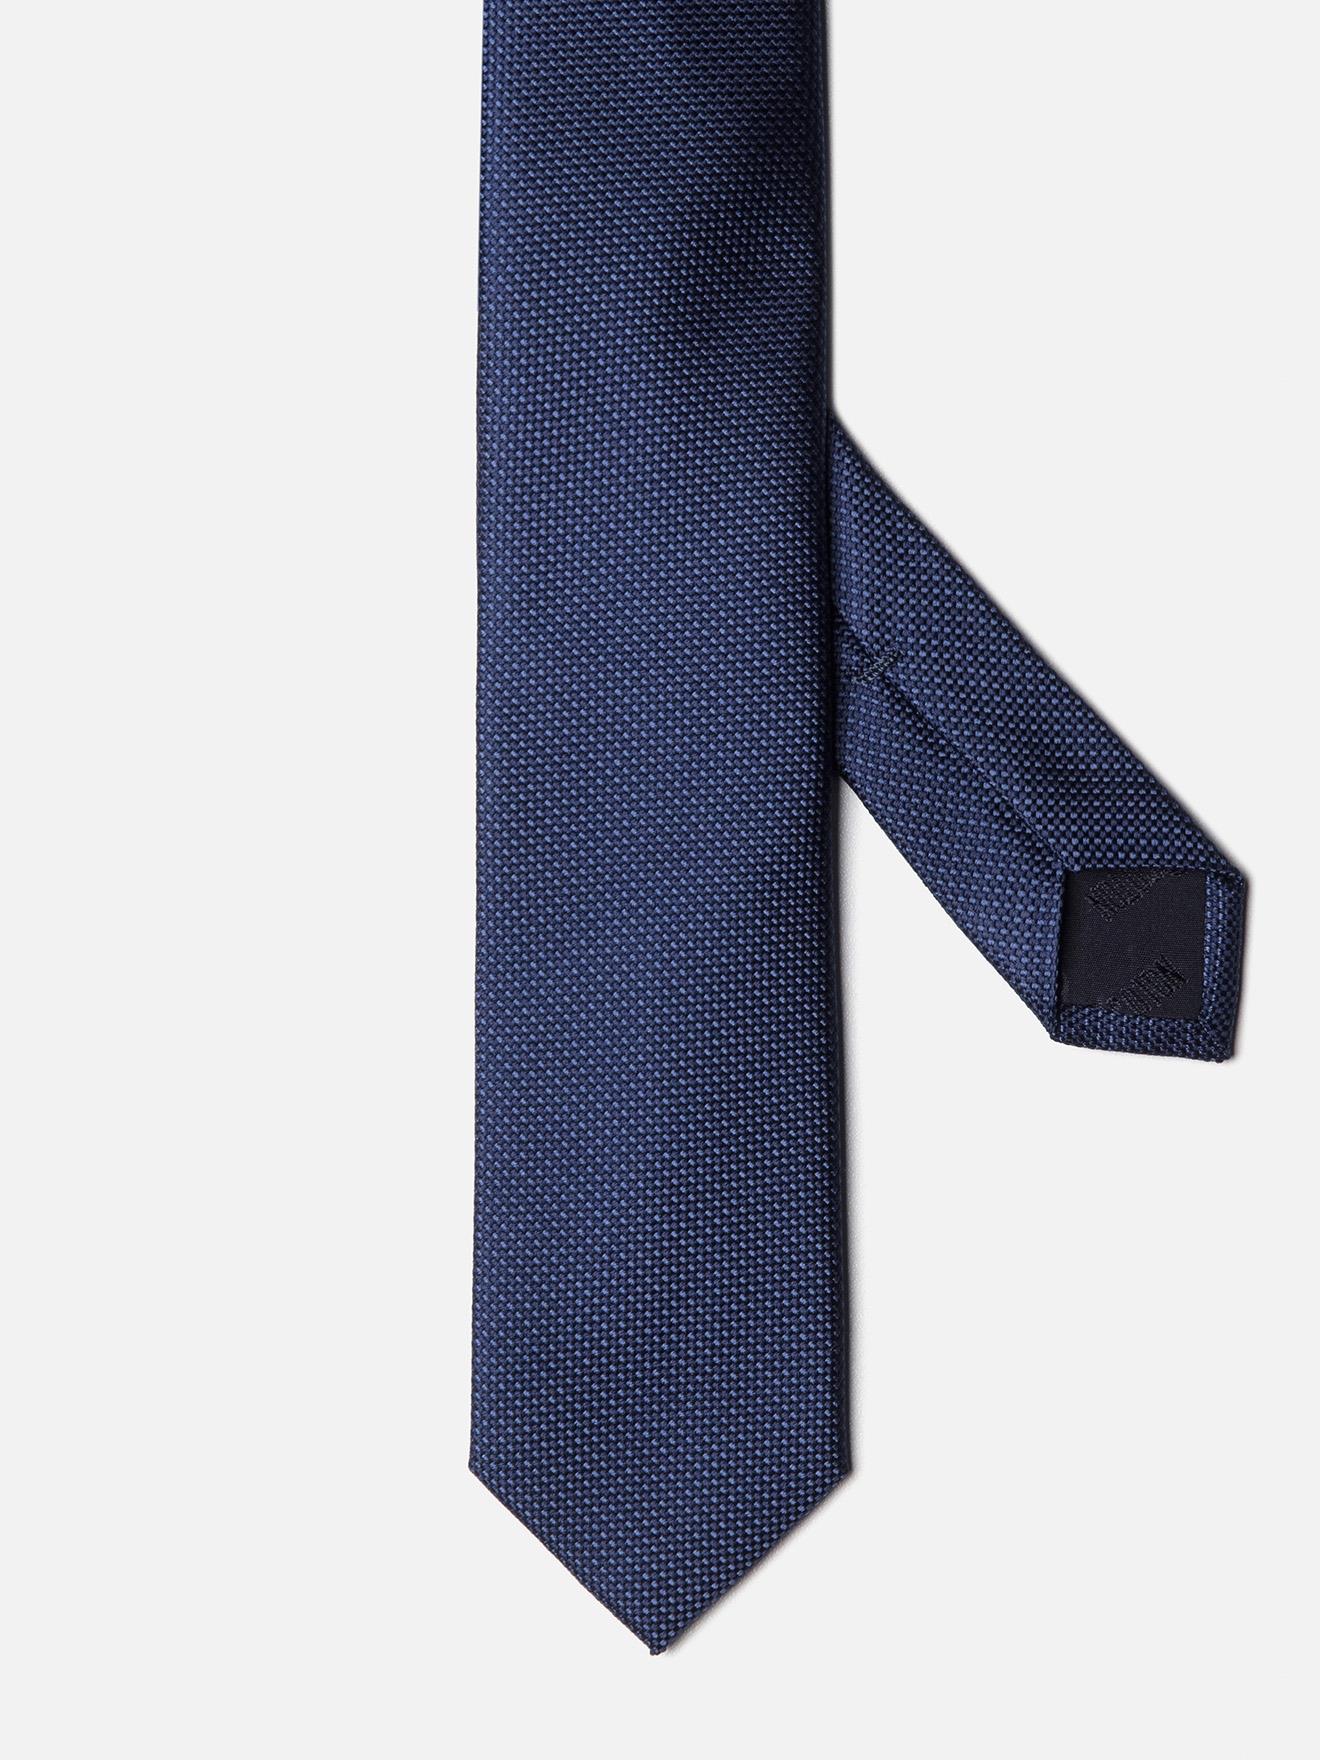 Cravate fine en soie marine natté bleu